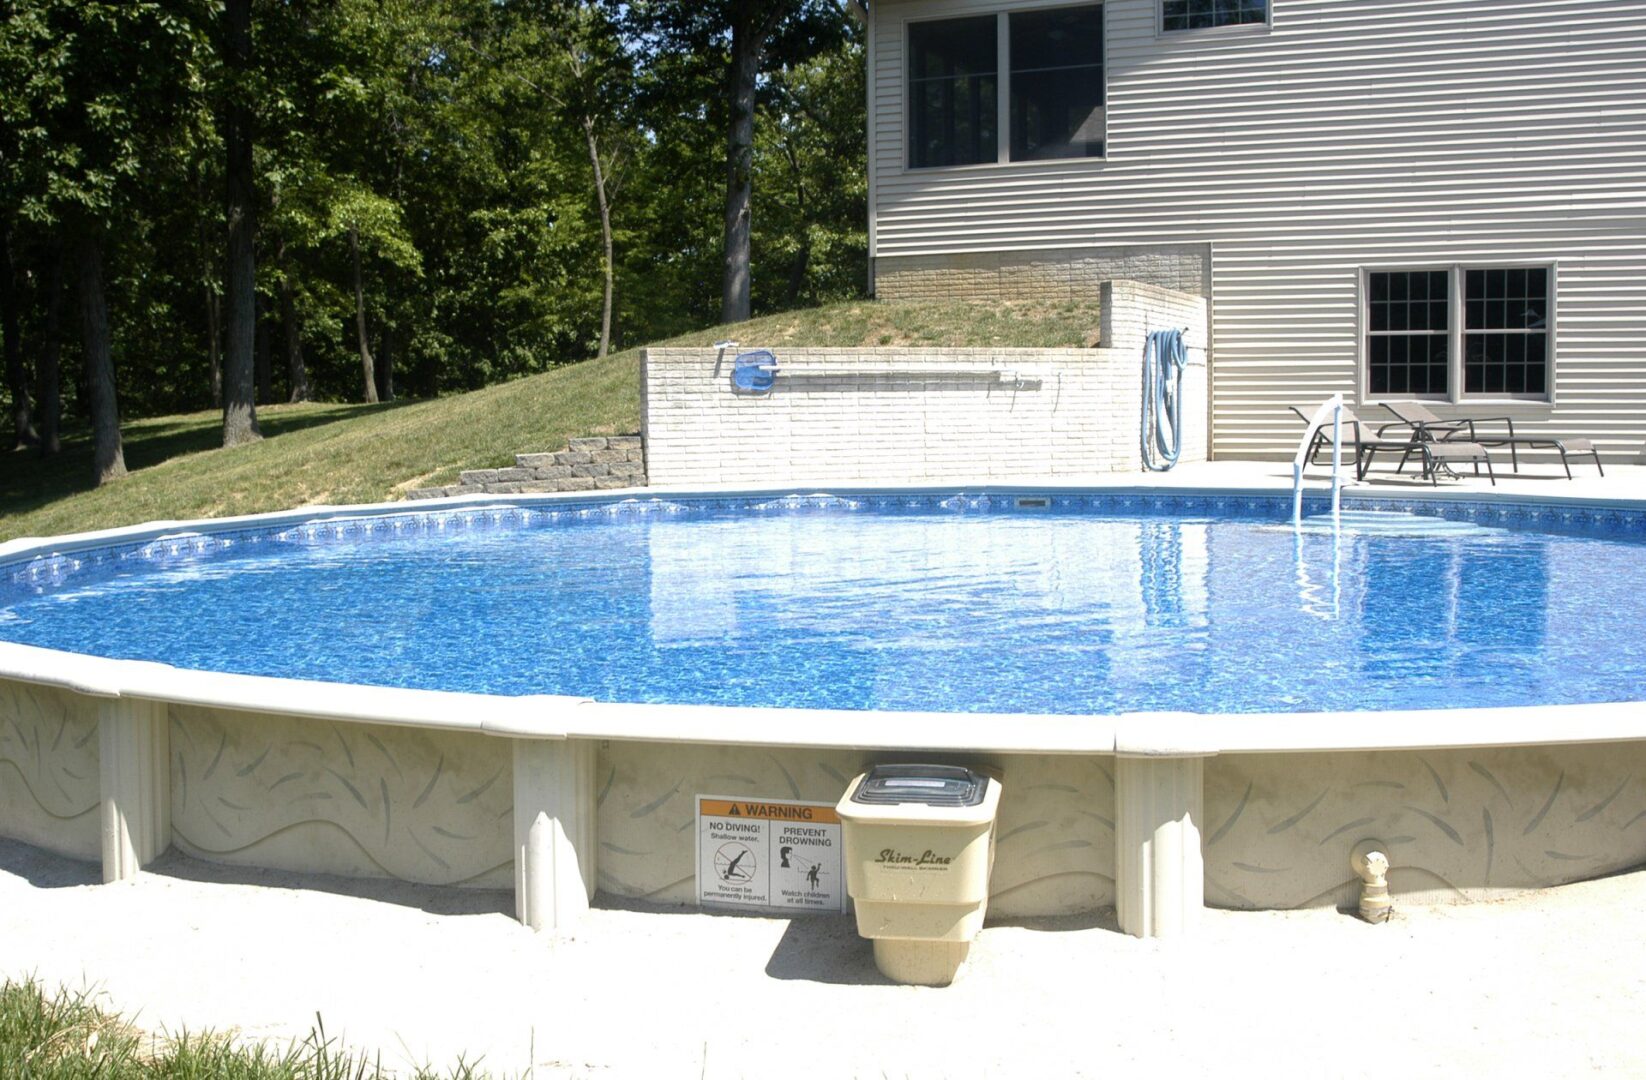 A pool in a backyard